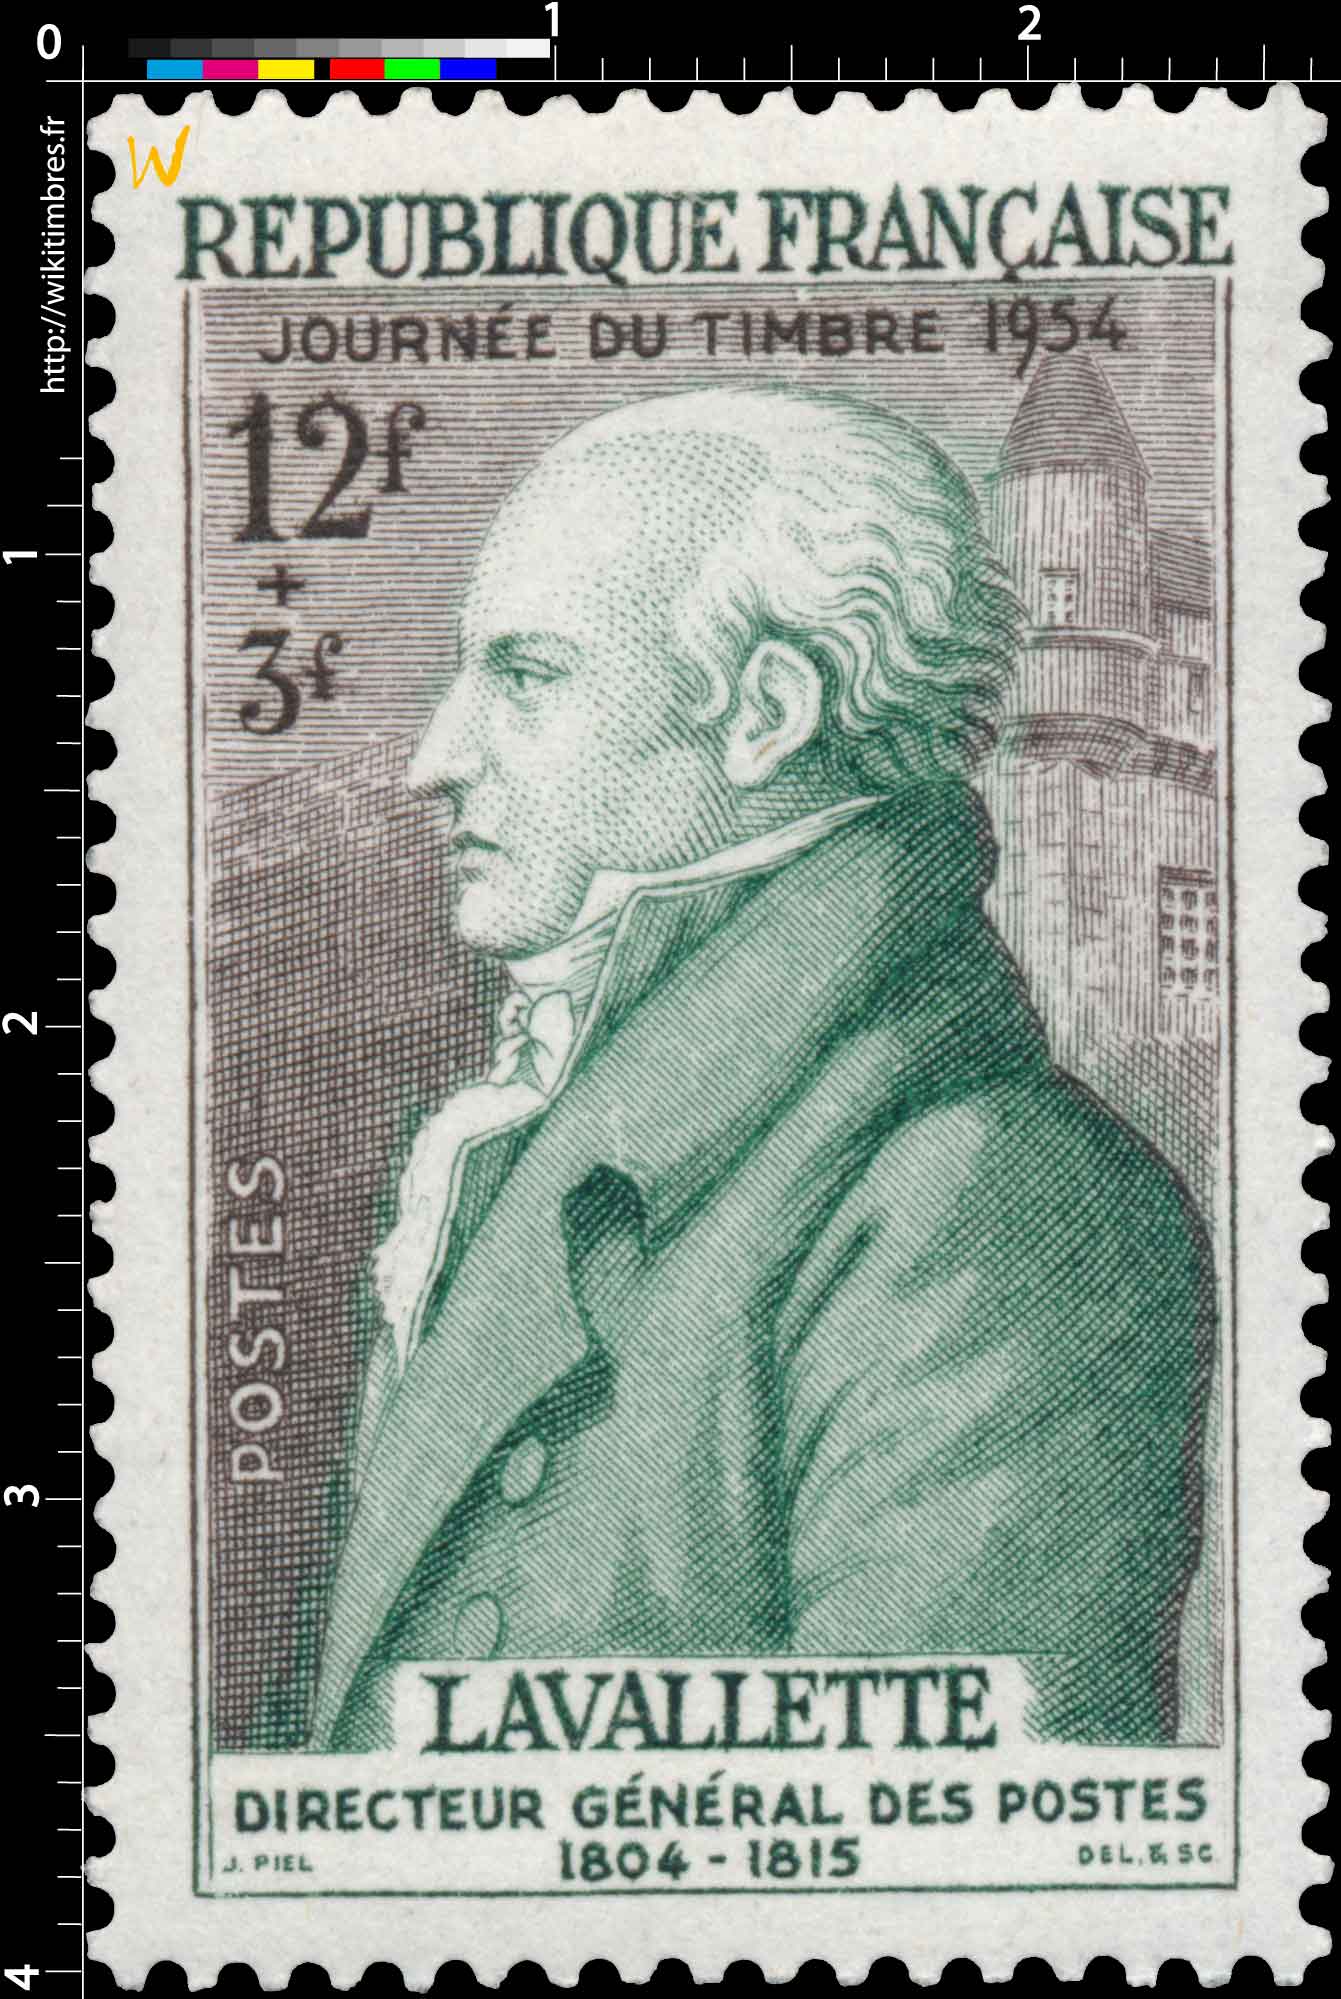 JOURNÉE DU TIMBRE 1954 LAVALETTE DIRECTEUR GÉNÉRAL DES POSTES 1804-1815